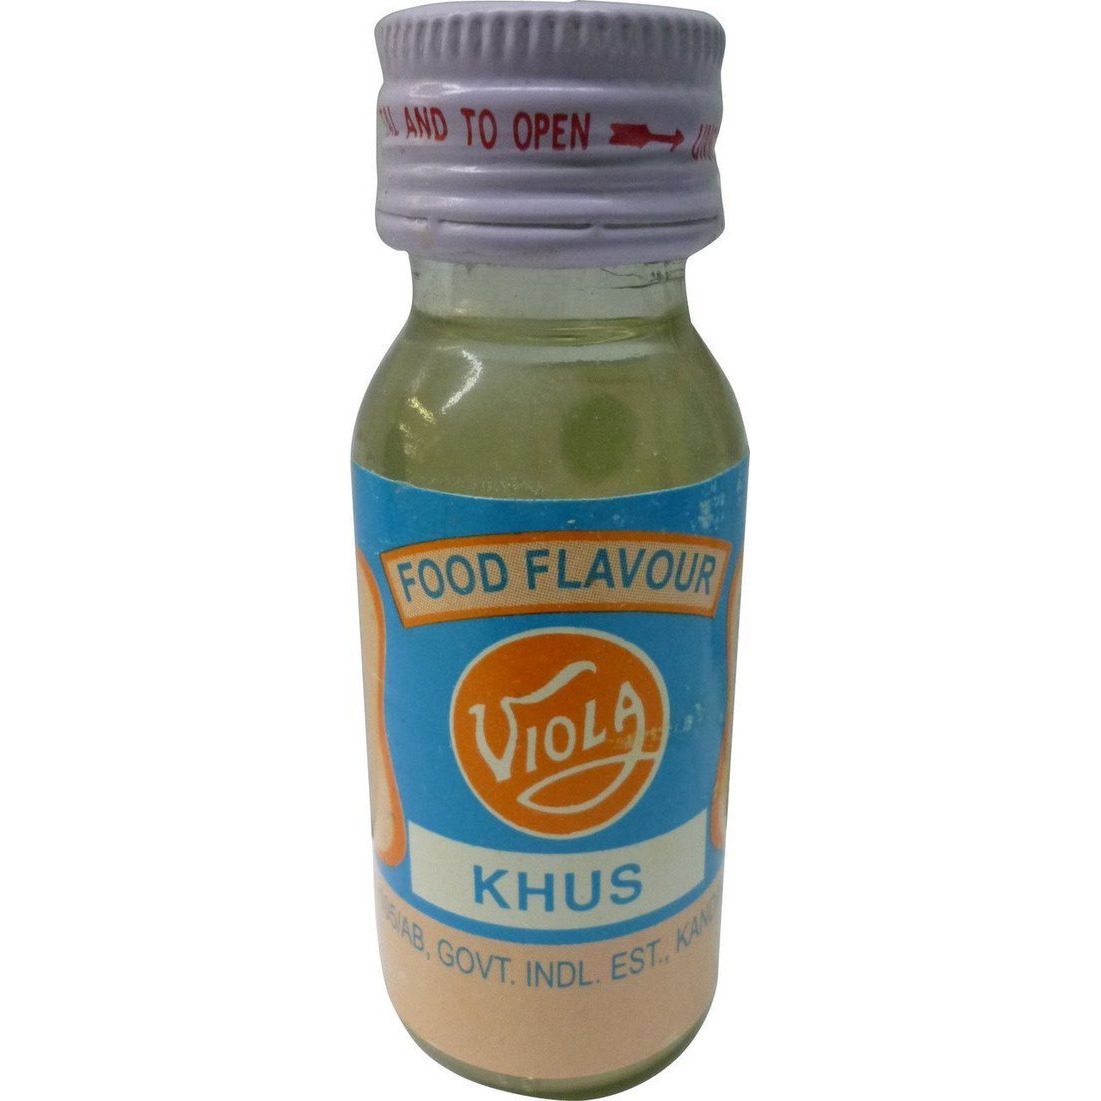 Case of 10 - Viola Food Flavor Essence Khus - 25 Ml (0.67 Oz)